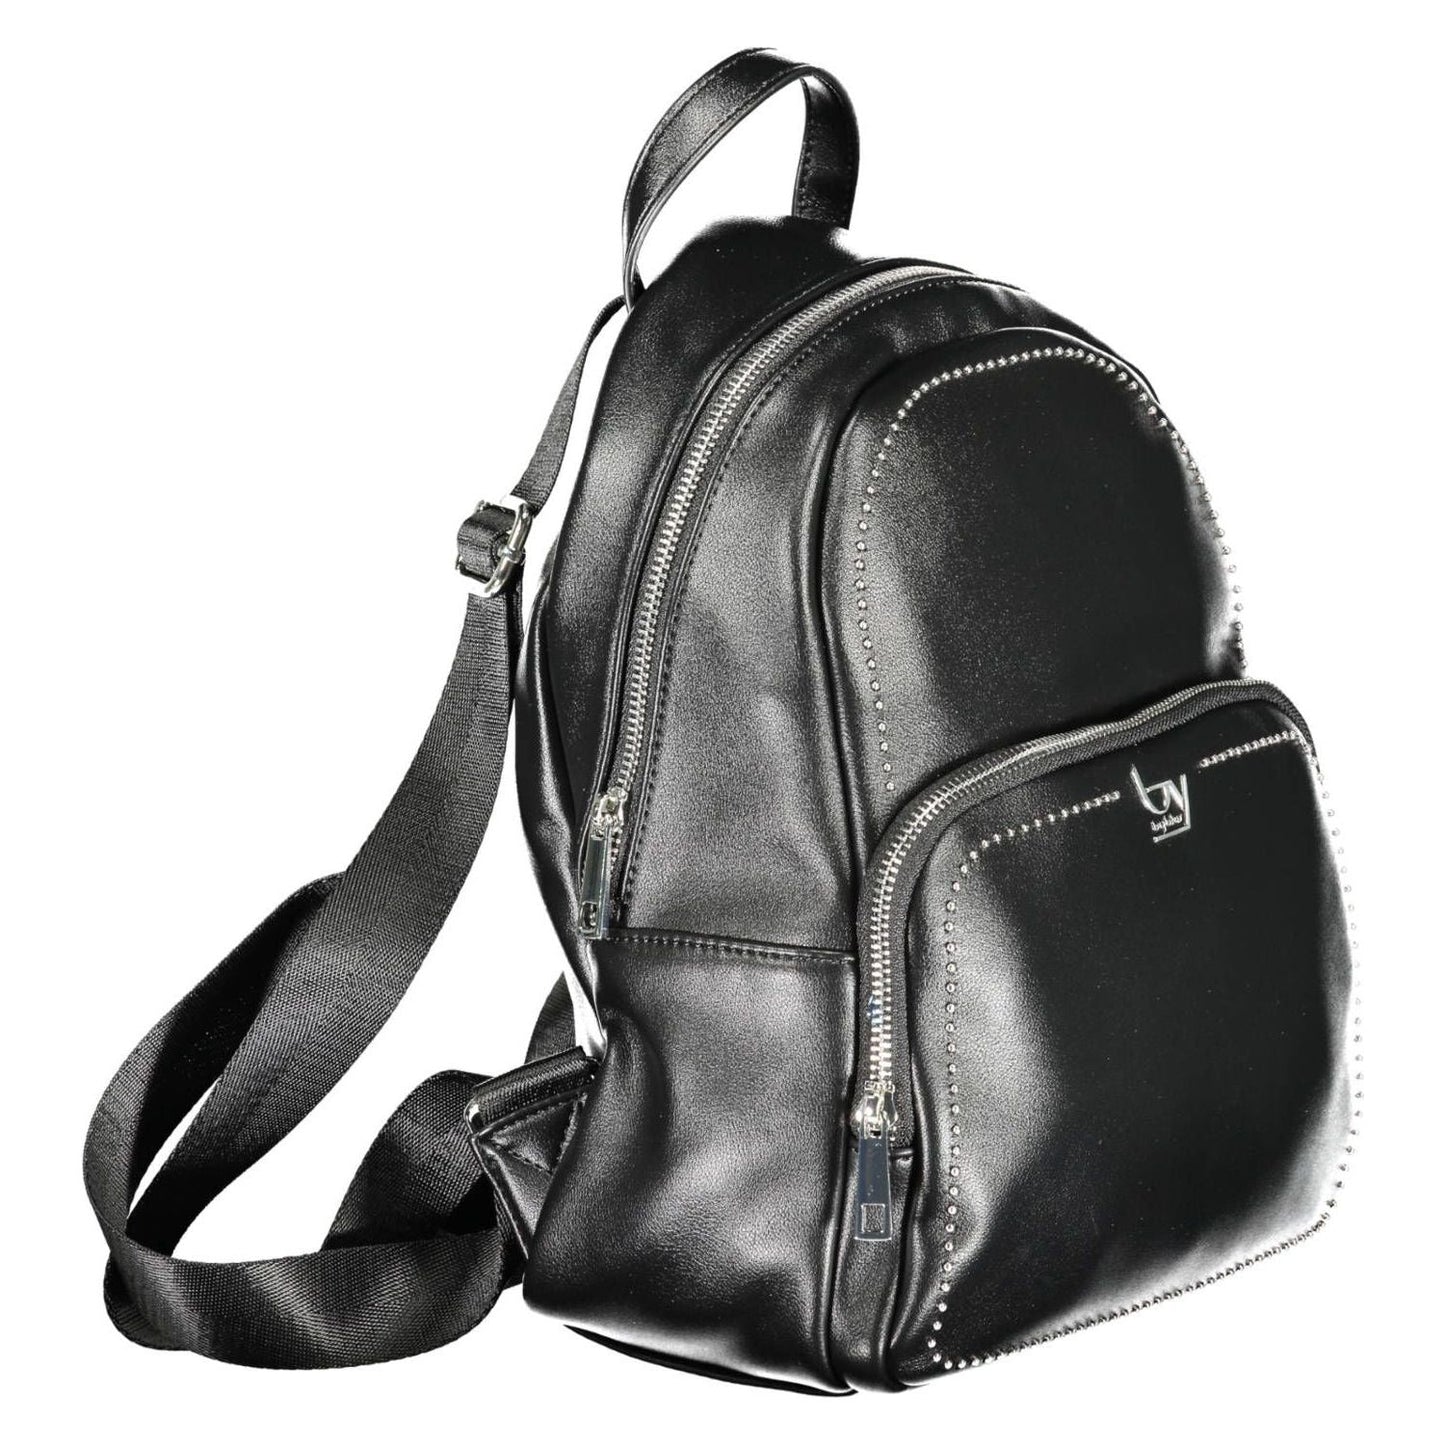 BYBLOS Elegant Designer Black Backpack with Contrasting Details elegant-designer-black-backpack-with-contrasting-details